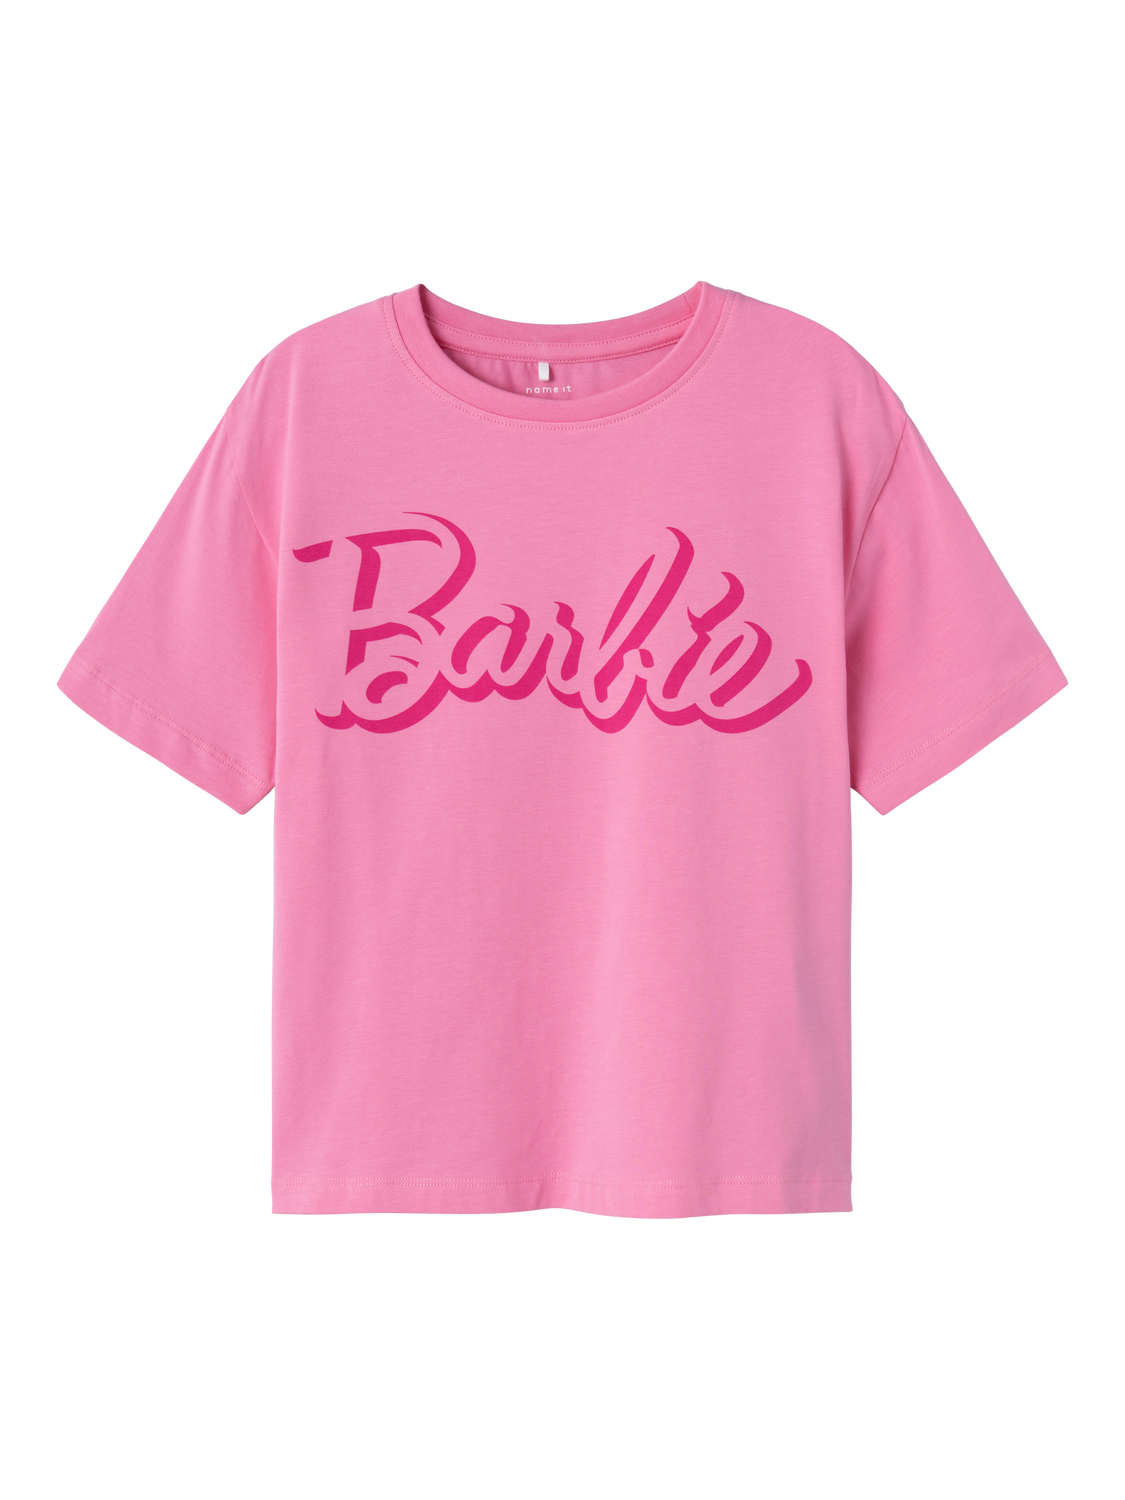 NKFDALINA T-Shirts & Tops - Pink Cosmos